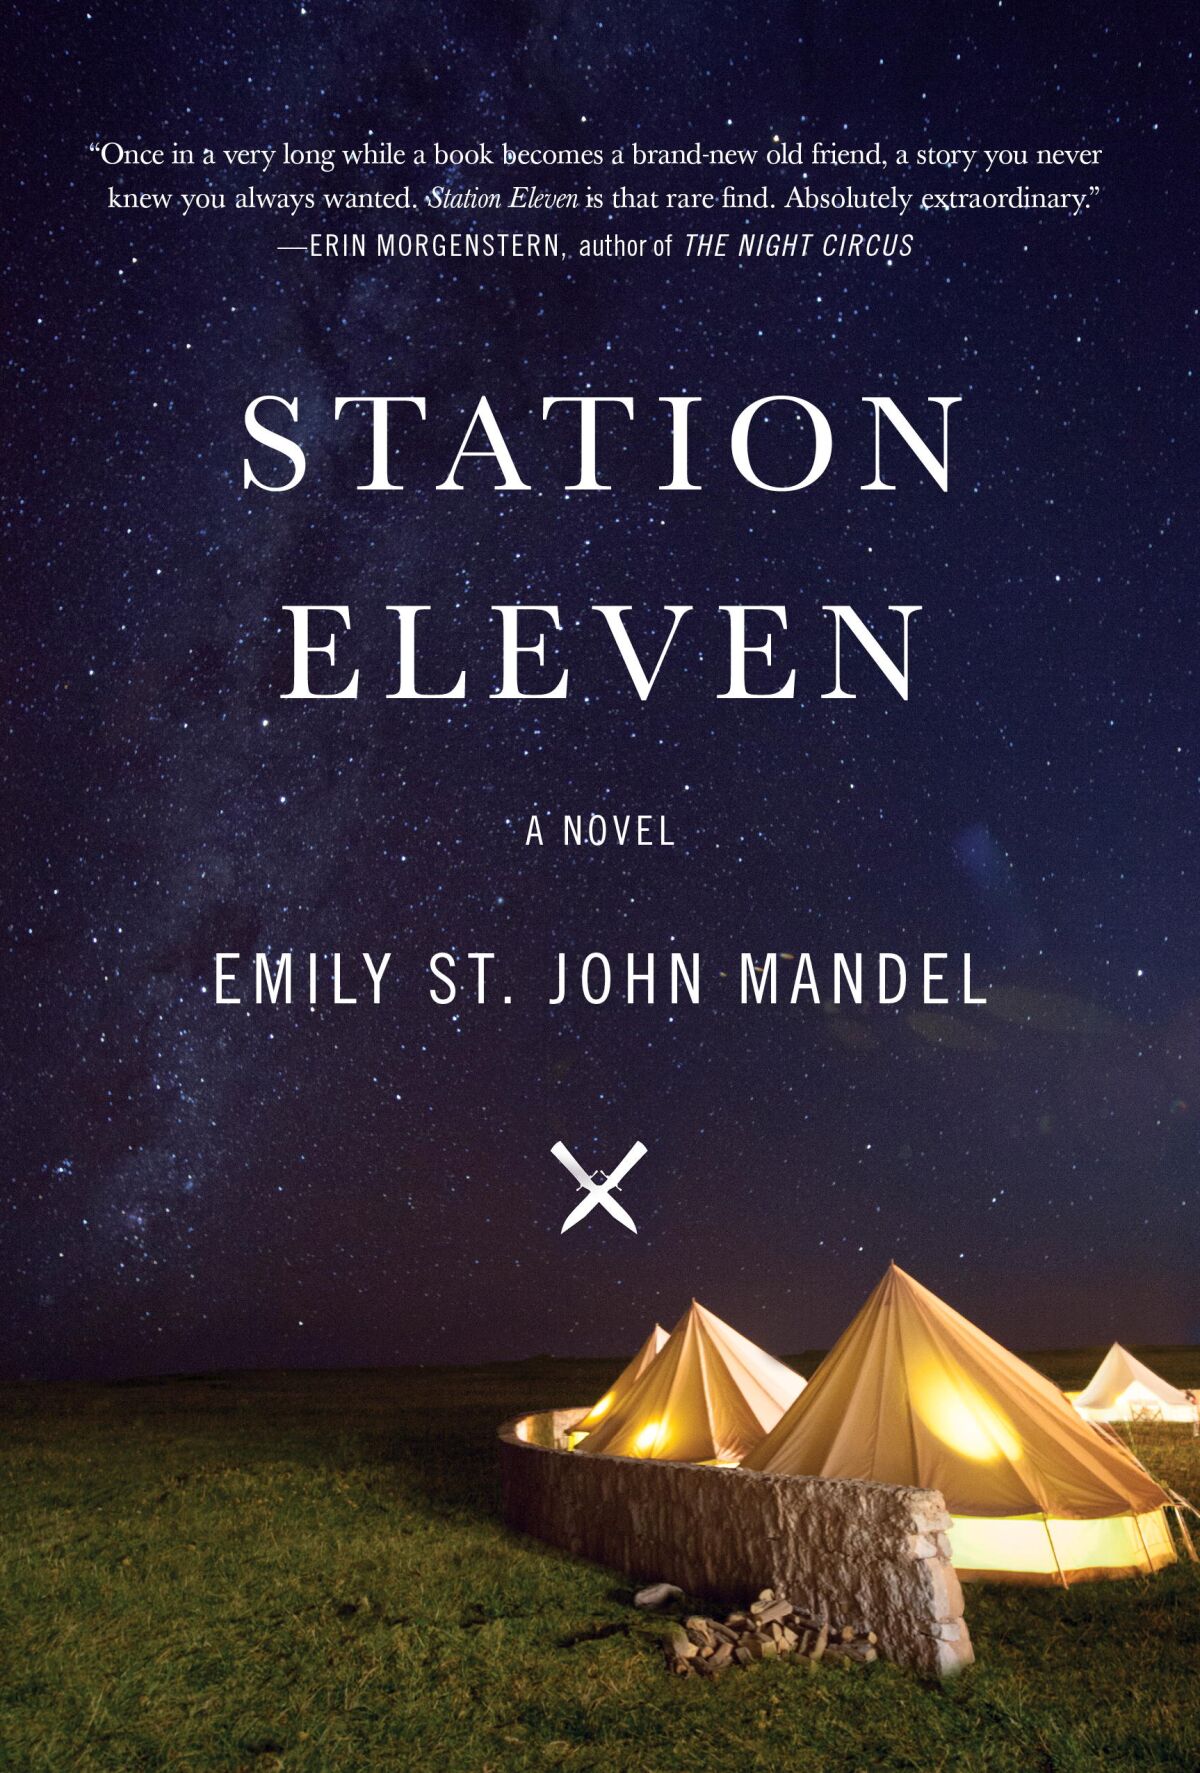 A book jacket for Emily St. John Mandel's "Station Eleven." Credit: Vintage